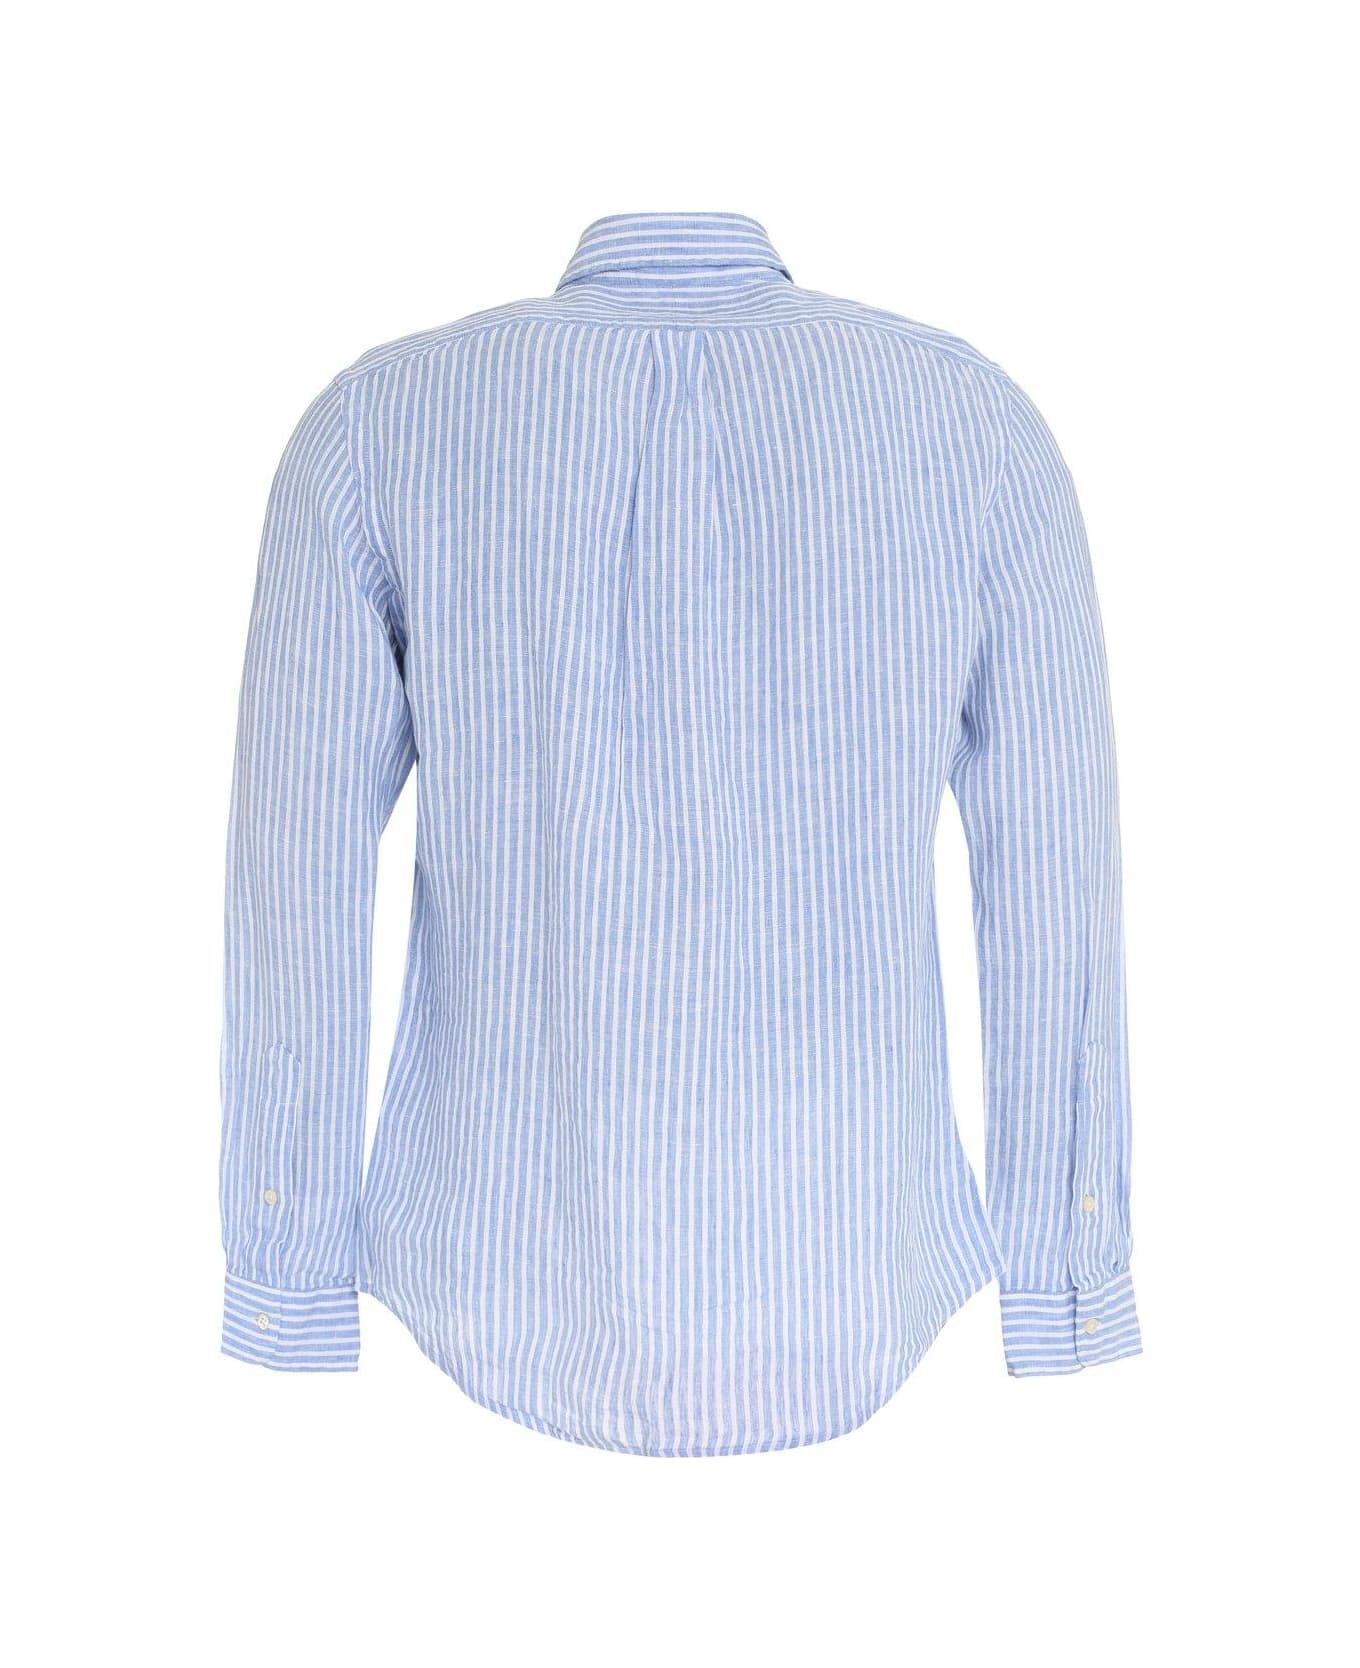 Polo Ralph Lauren Striped Long-sleeved Shirt Polo Ralph Lauren - LIGHT BLUE